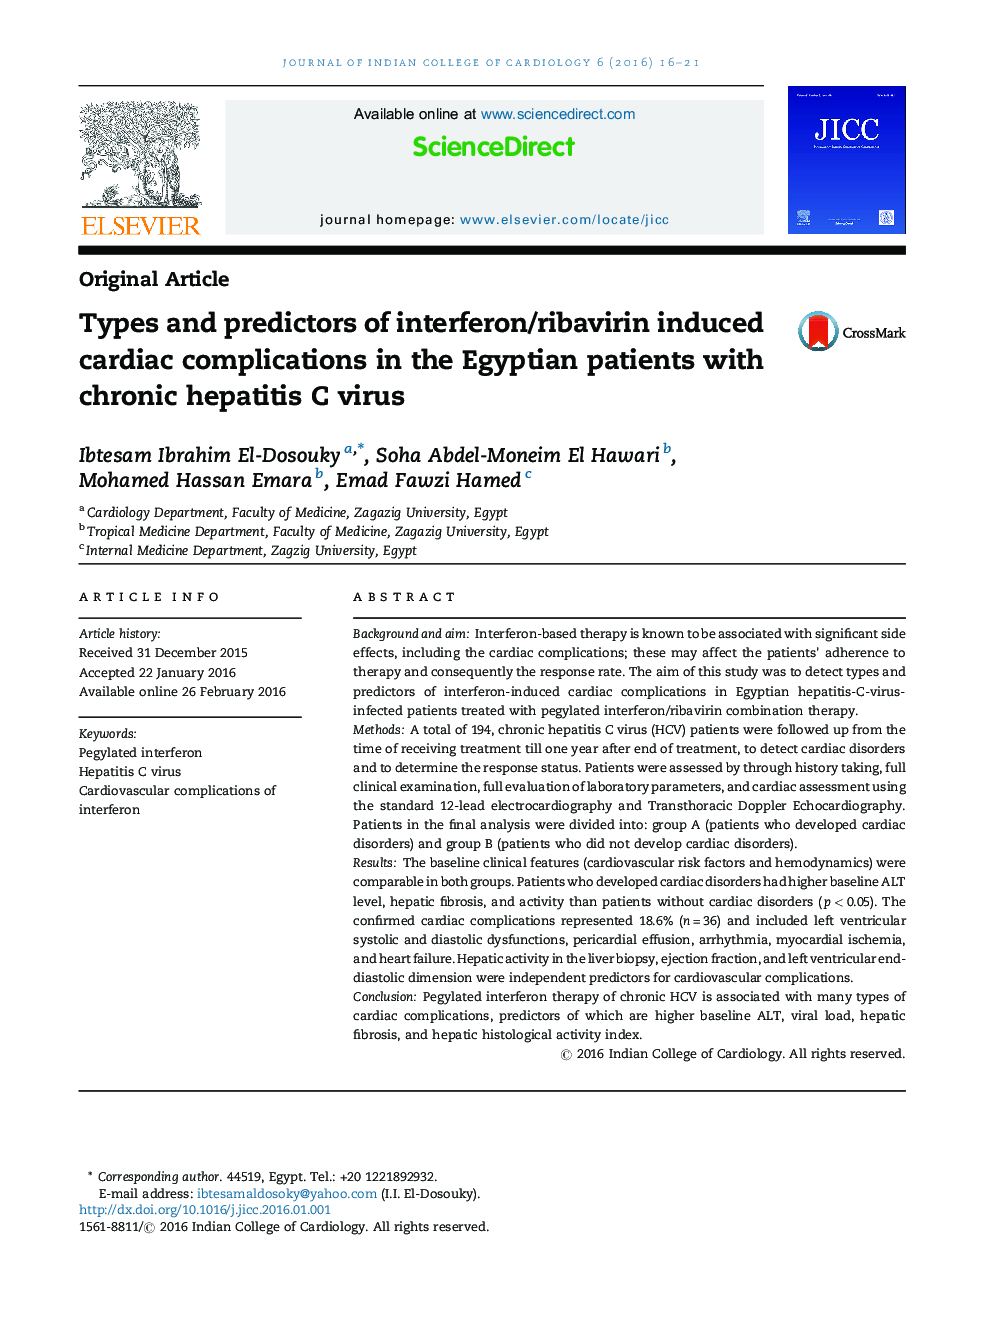 انواع و پیش بینی کننده های اینترفرون/ریباویرین ناشی از عوارض قلبی در بیماران مصری با ویروس هپاتیت C مزمن